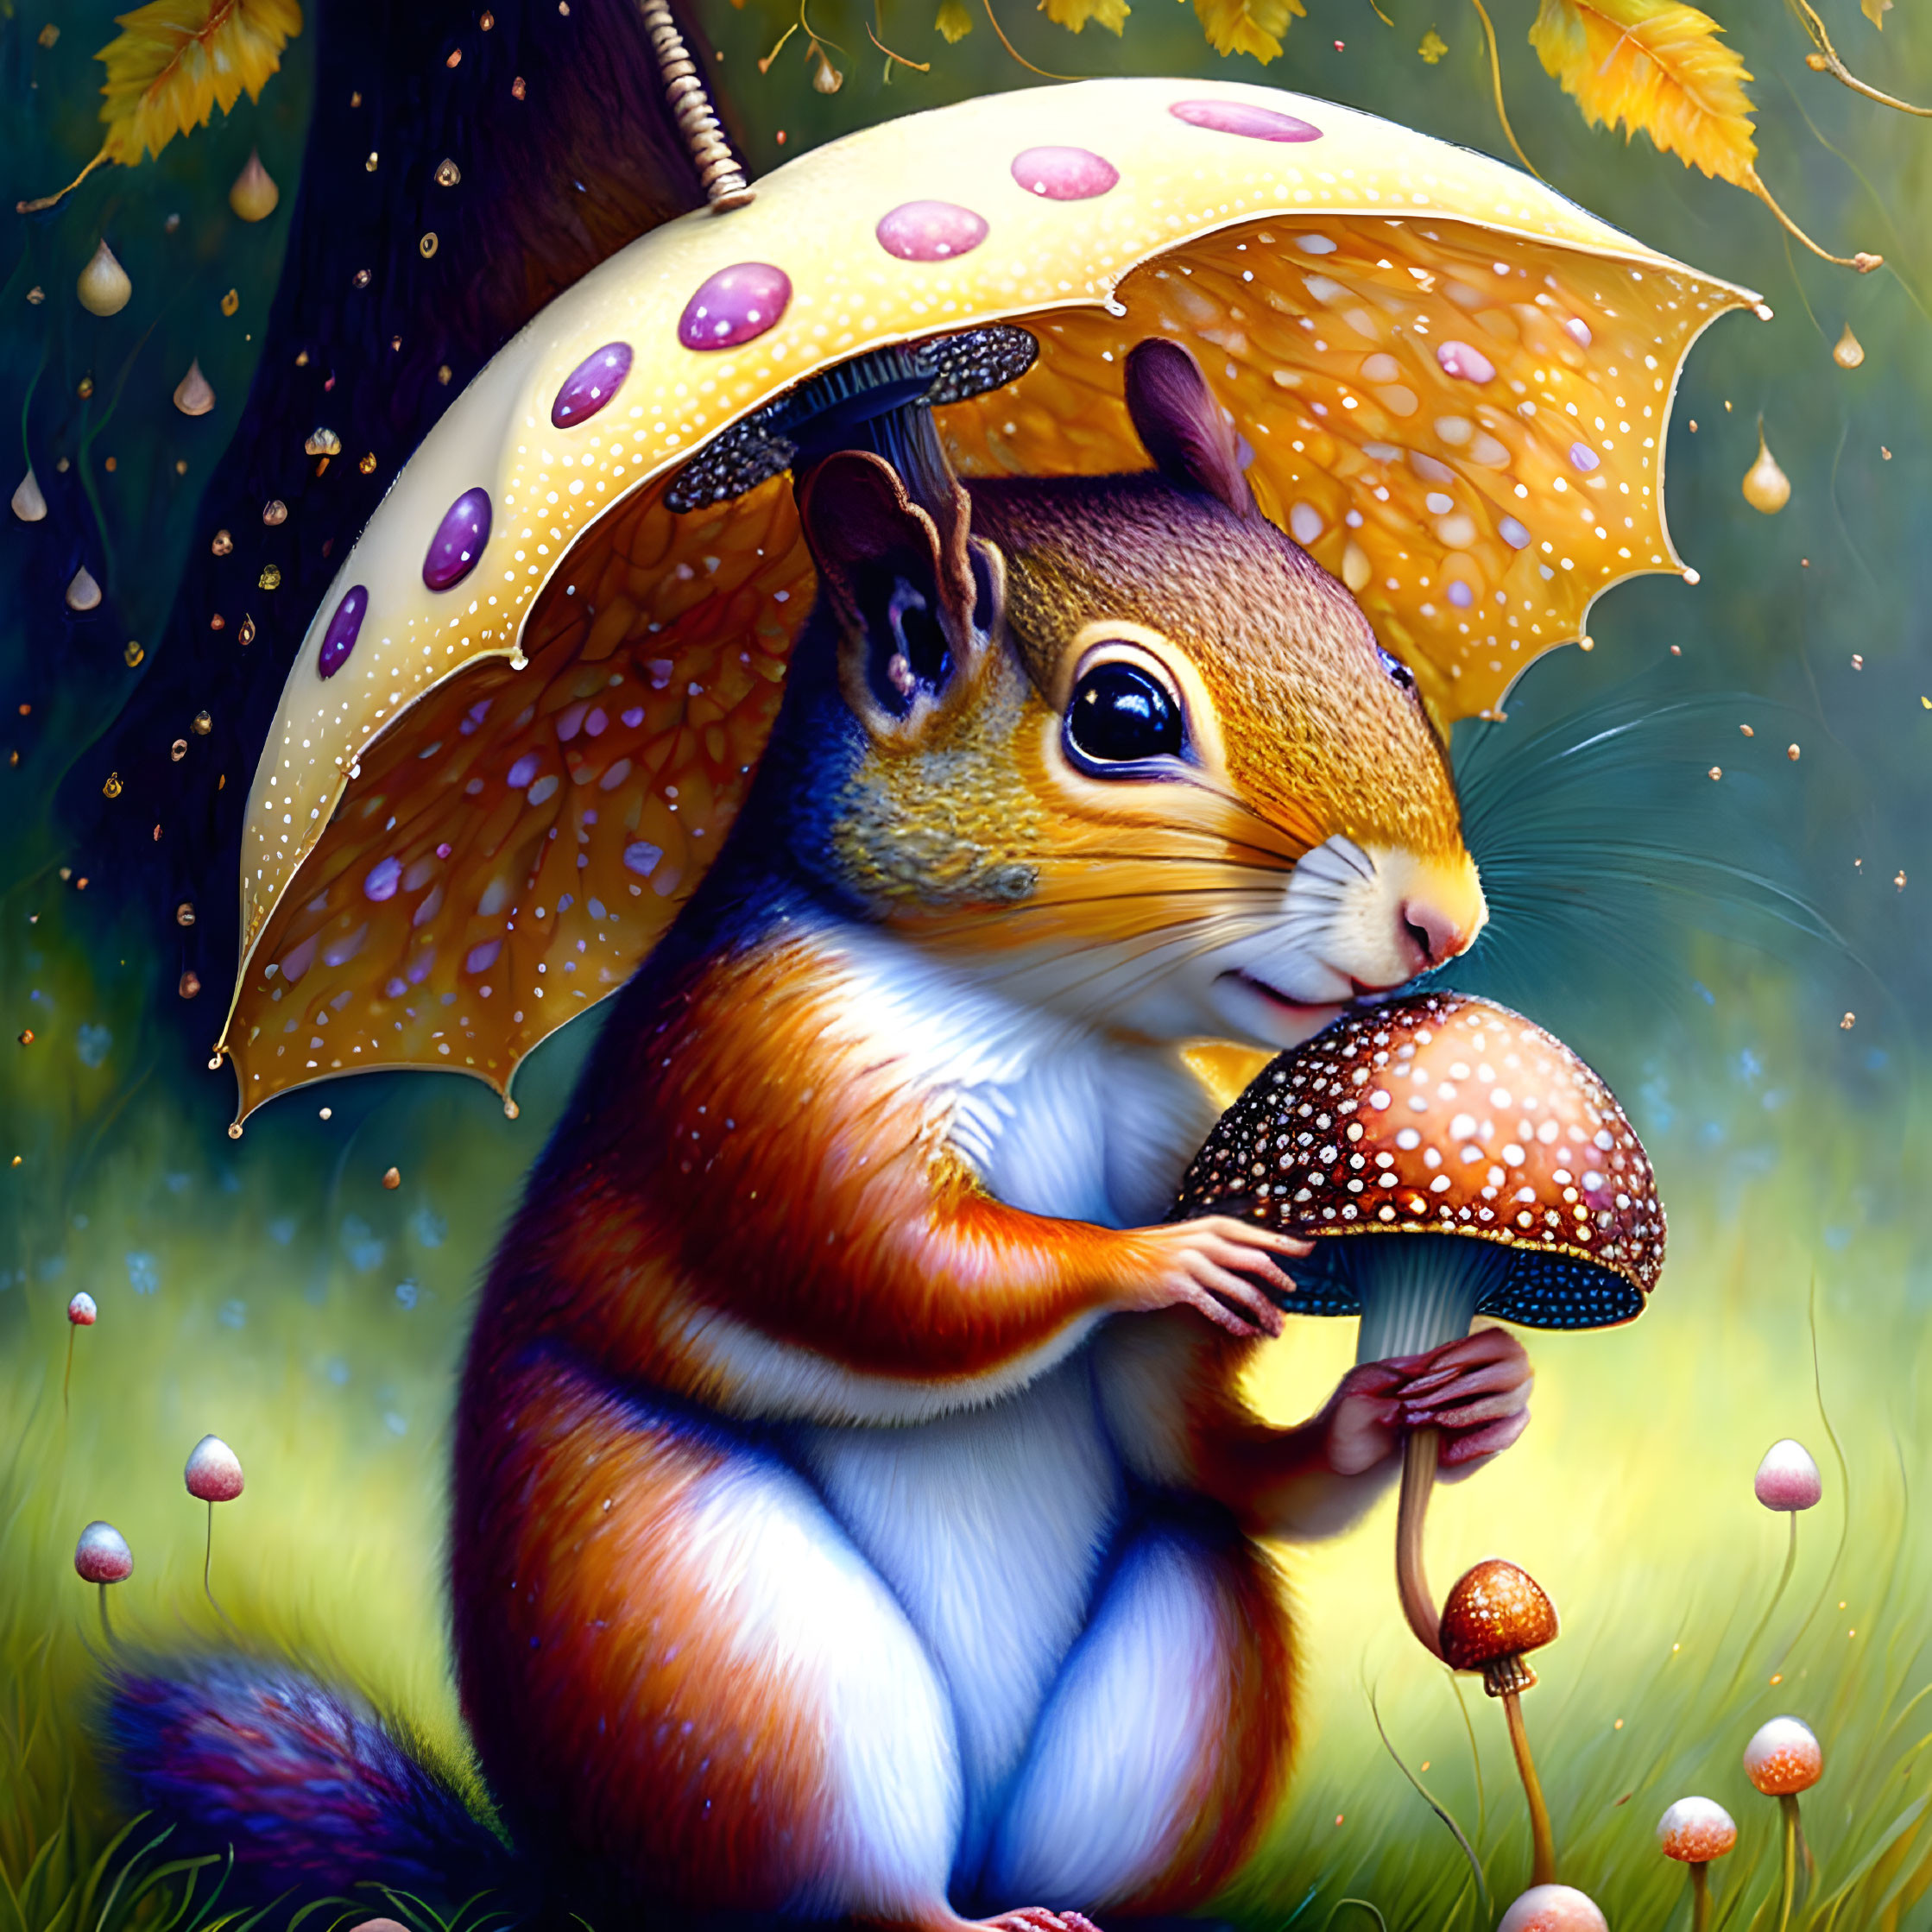 A cute Squirrel under an umbrella